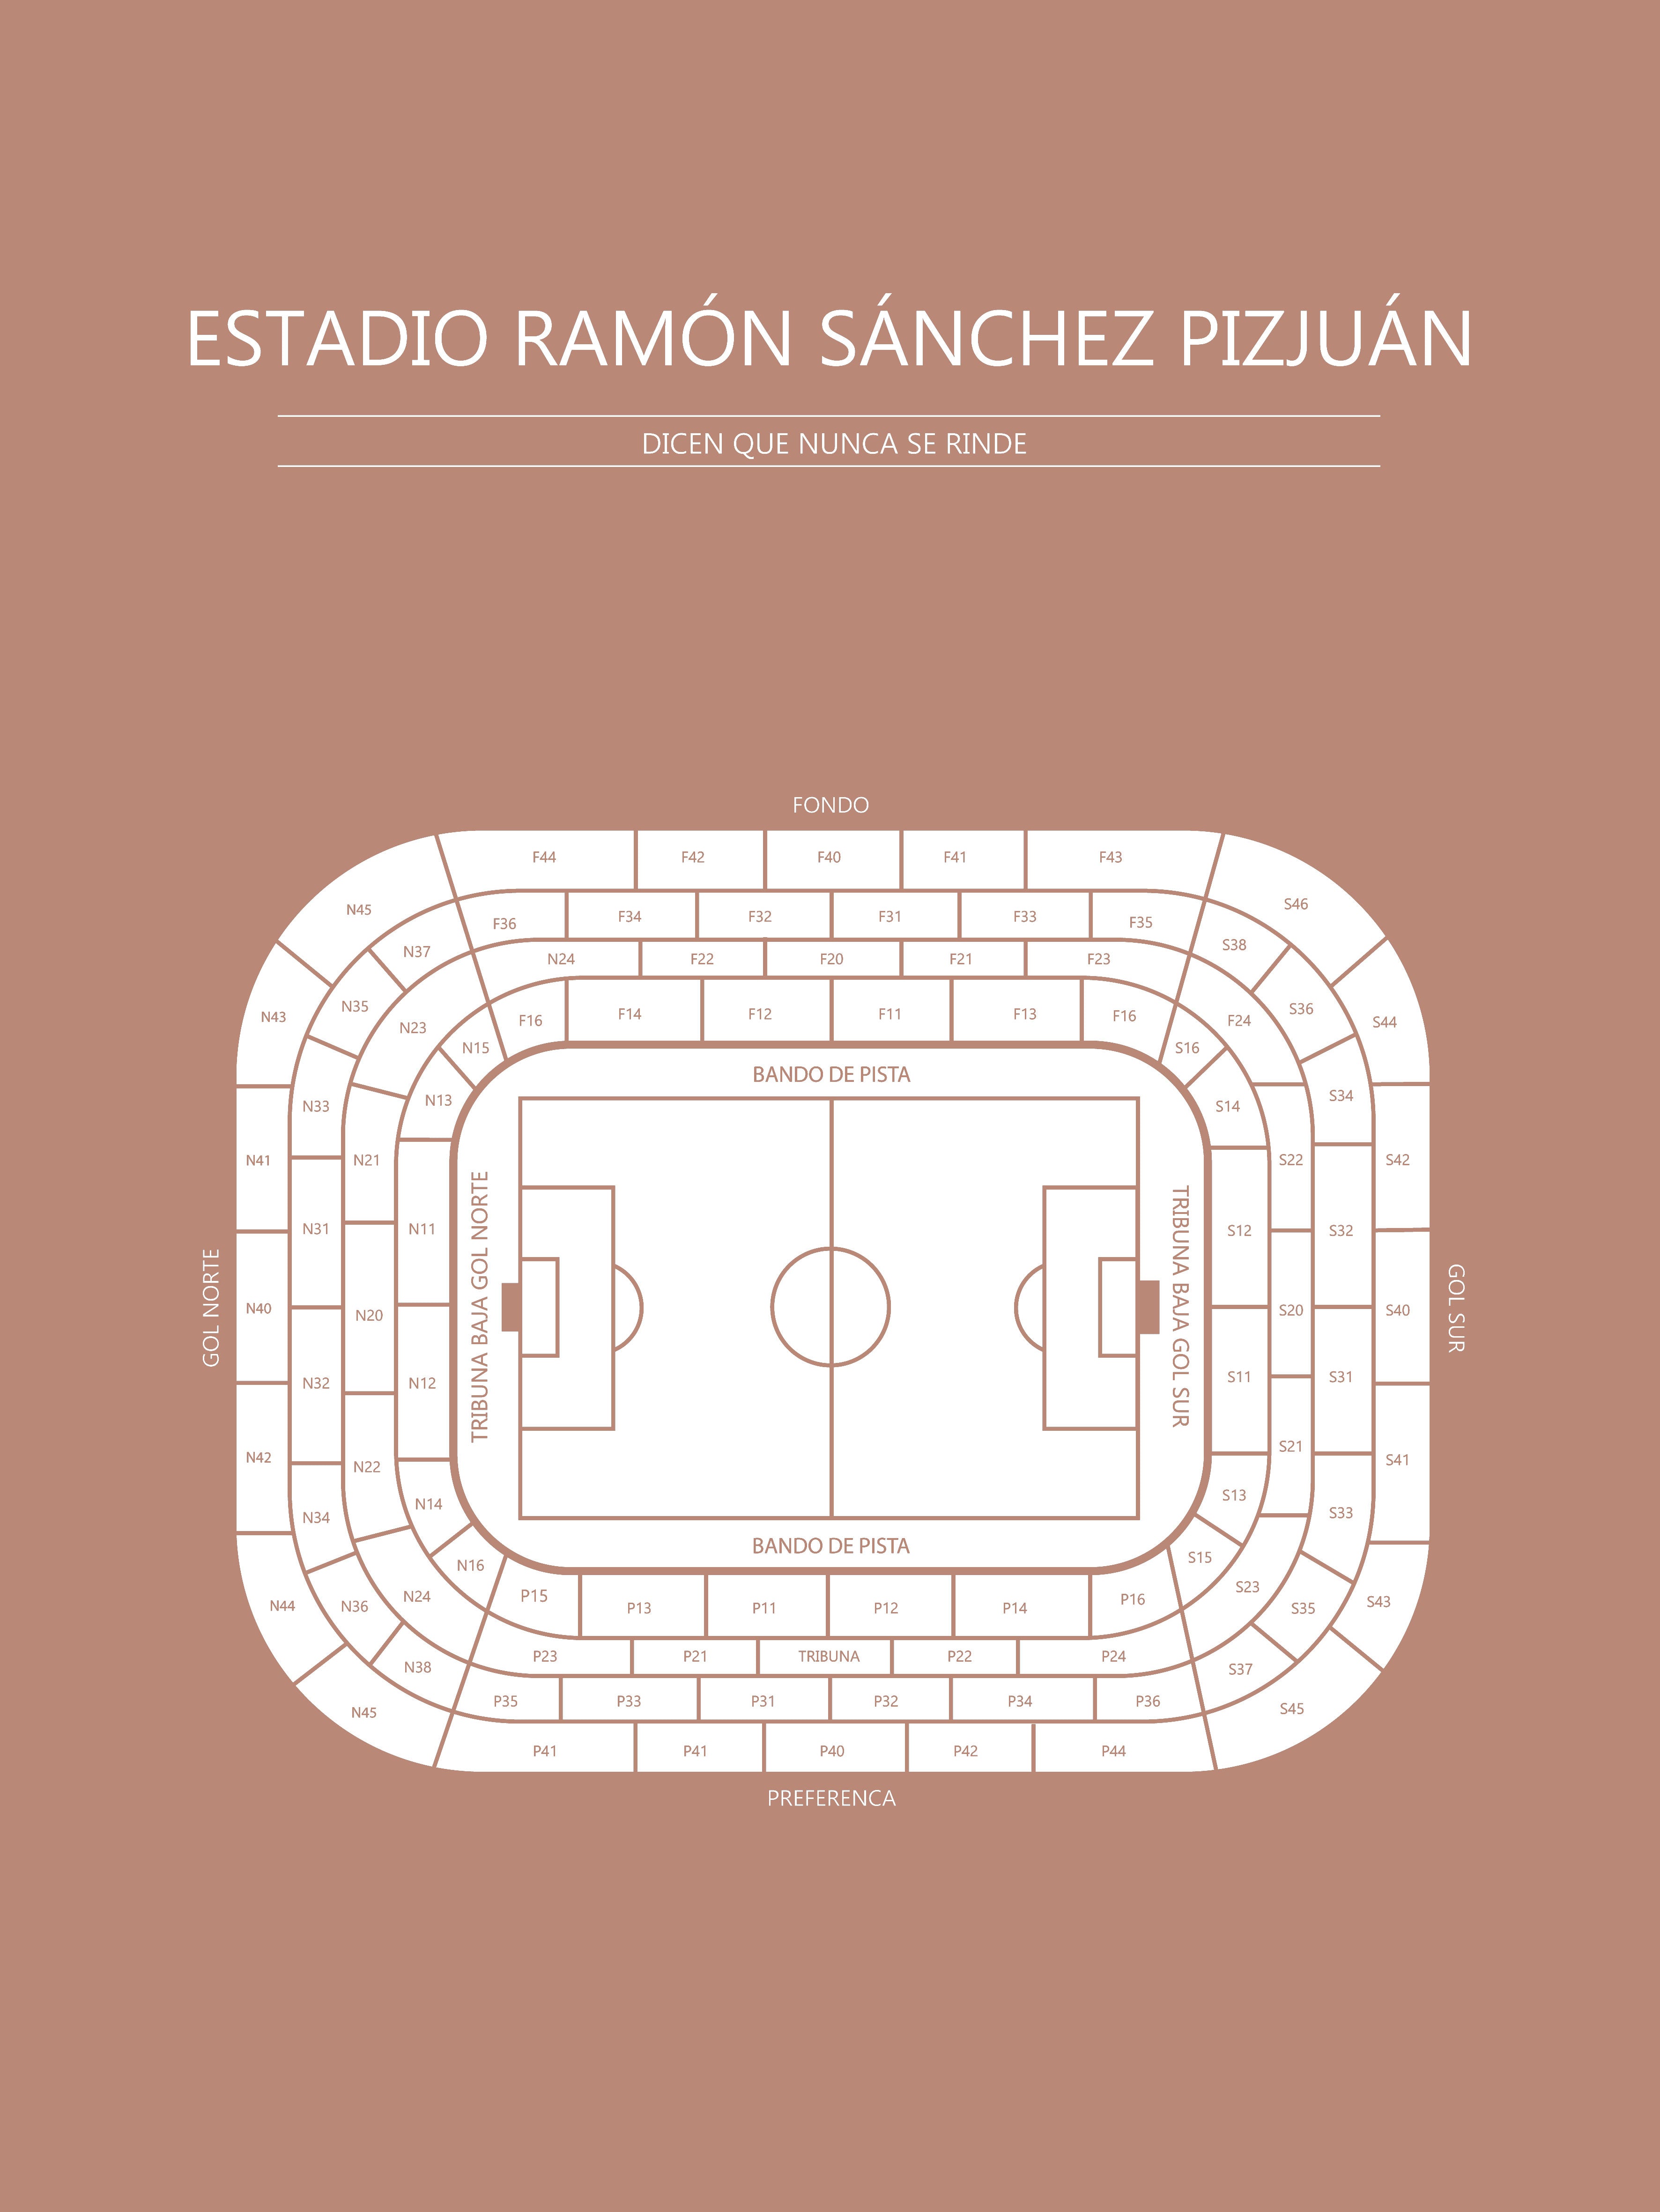 Fodbold plakat Sevilla FC Estadio Ramón Sánchez Pizjuán Sahara